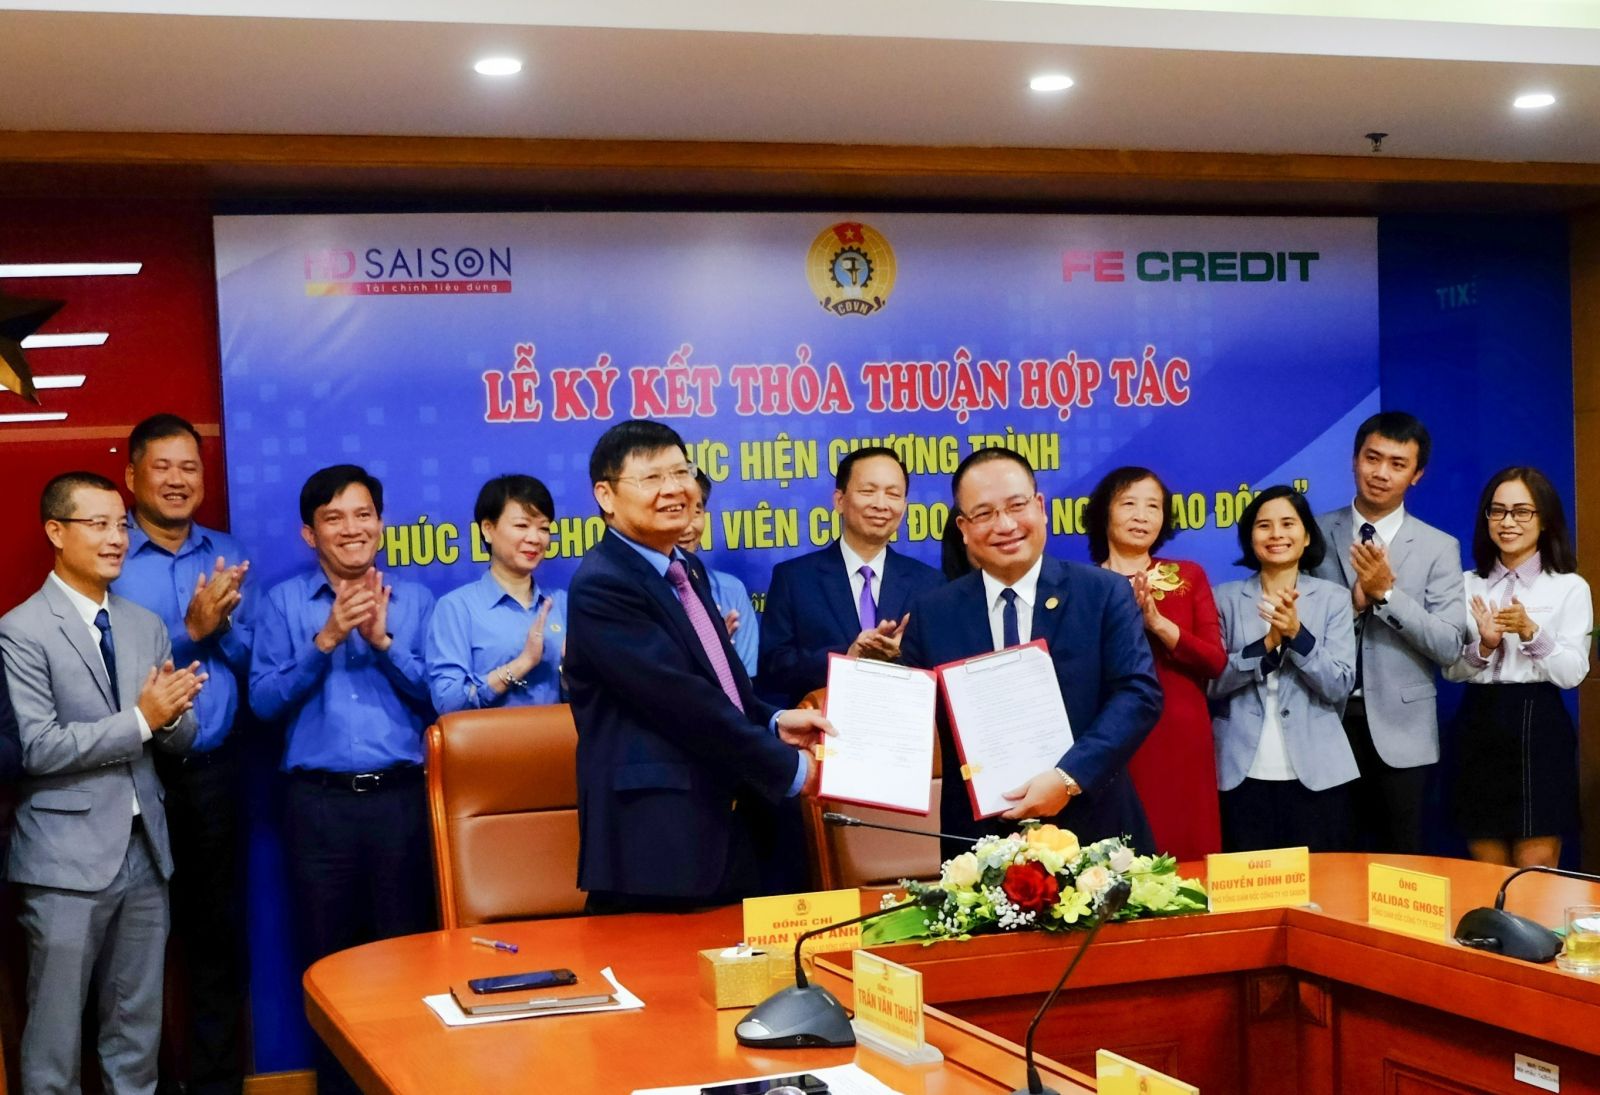 Ông Đặng Đình Đức, Phó Tổng giám đốc HD SAISON ký kết hợp tác với Tổng Liên đoàn Lao động Việt Nam triển khai gói vay ưu đãii cho công nhân, người lao động trên toàn quốc